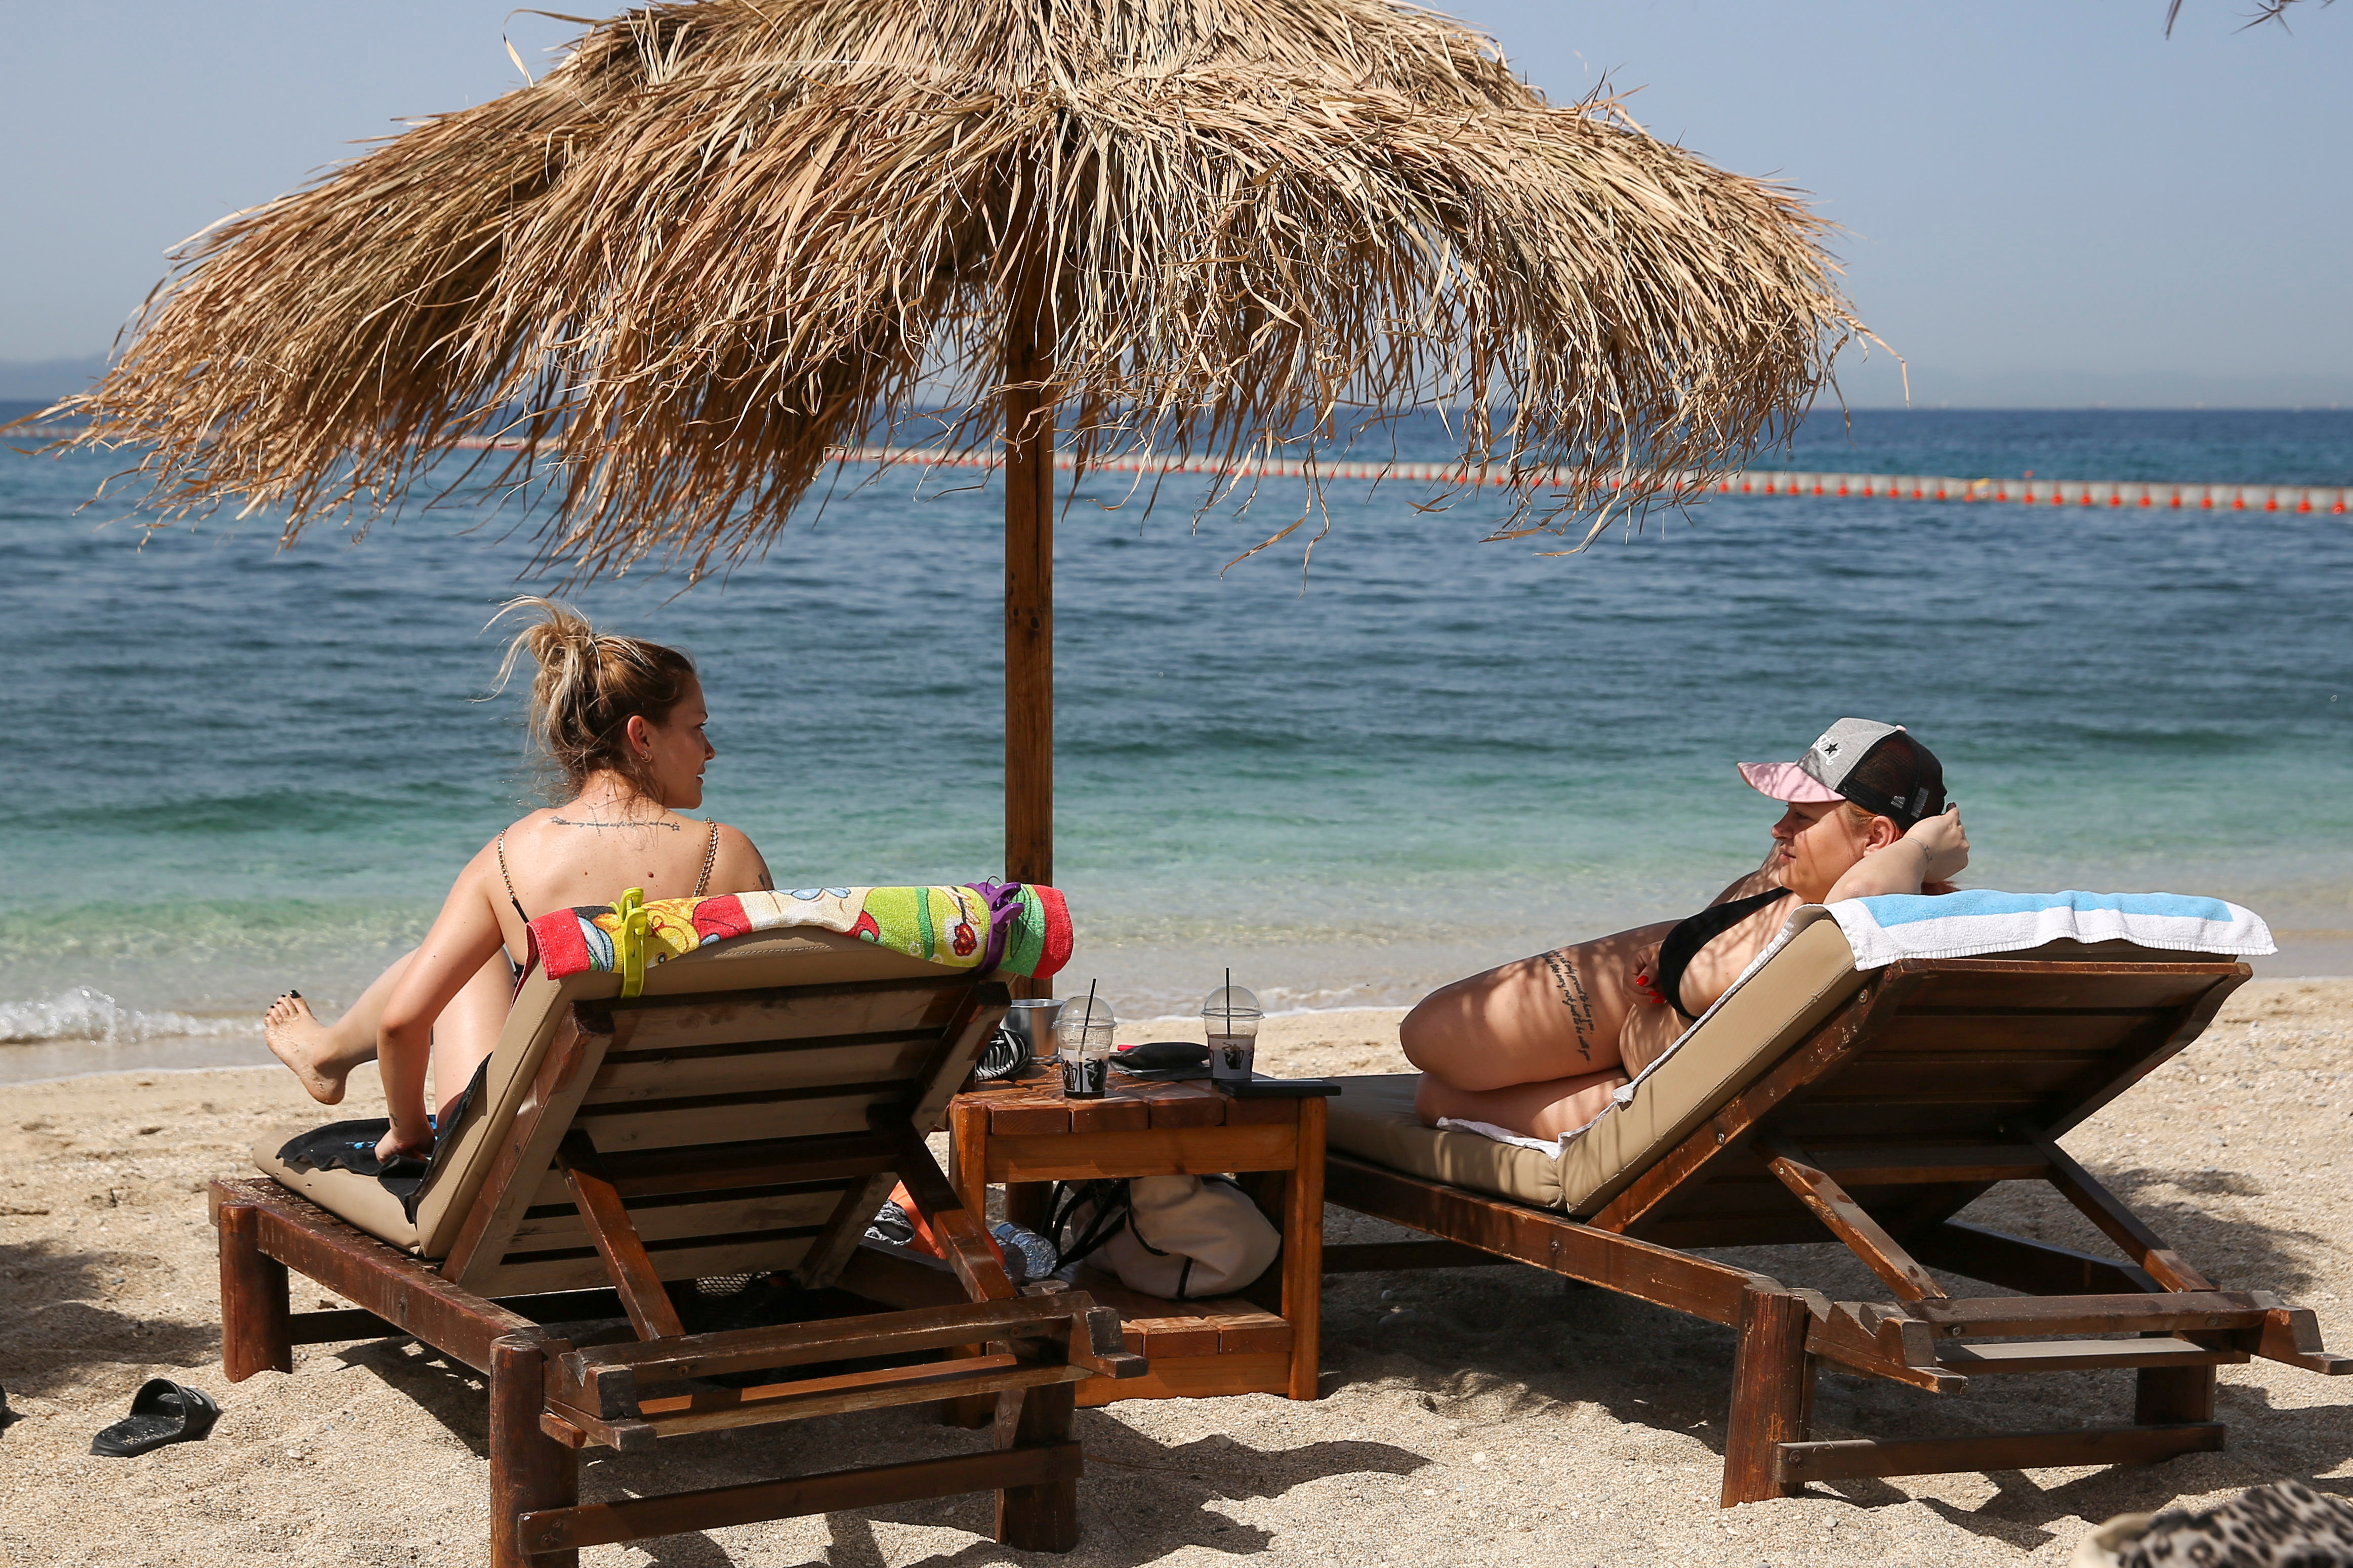 Lidé si užívají slunce během oficiálního znovuotevření pláží pro veřejnost v návaznosti na zmírnění opatření proti šíření koronavirové choroby (COVID-19) v Aténách v Řecku 8. května 2021. REUTERS / Costas Baltas